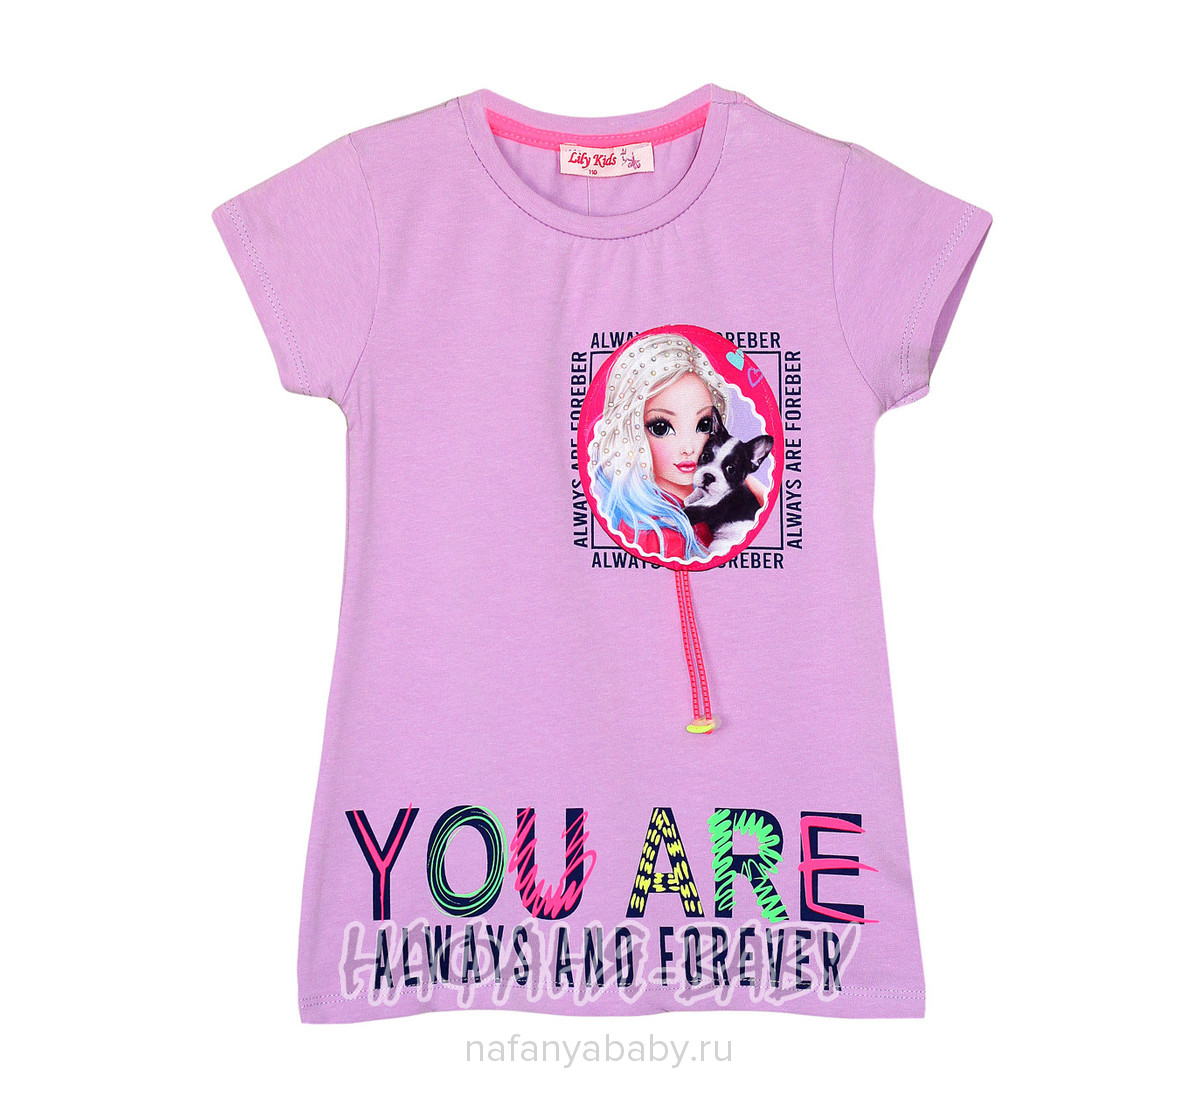 Модная футболка с фотопринтом LILY Kids арт: 3698, 5-9 лет, оптом Турция